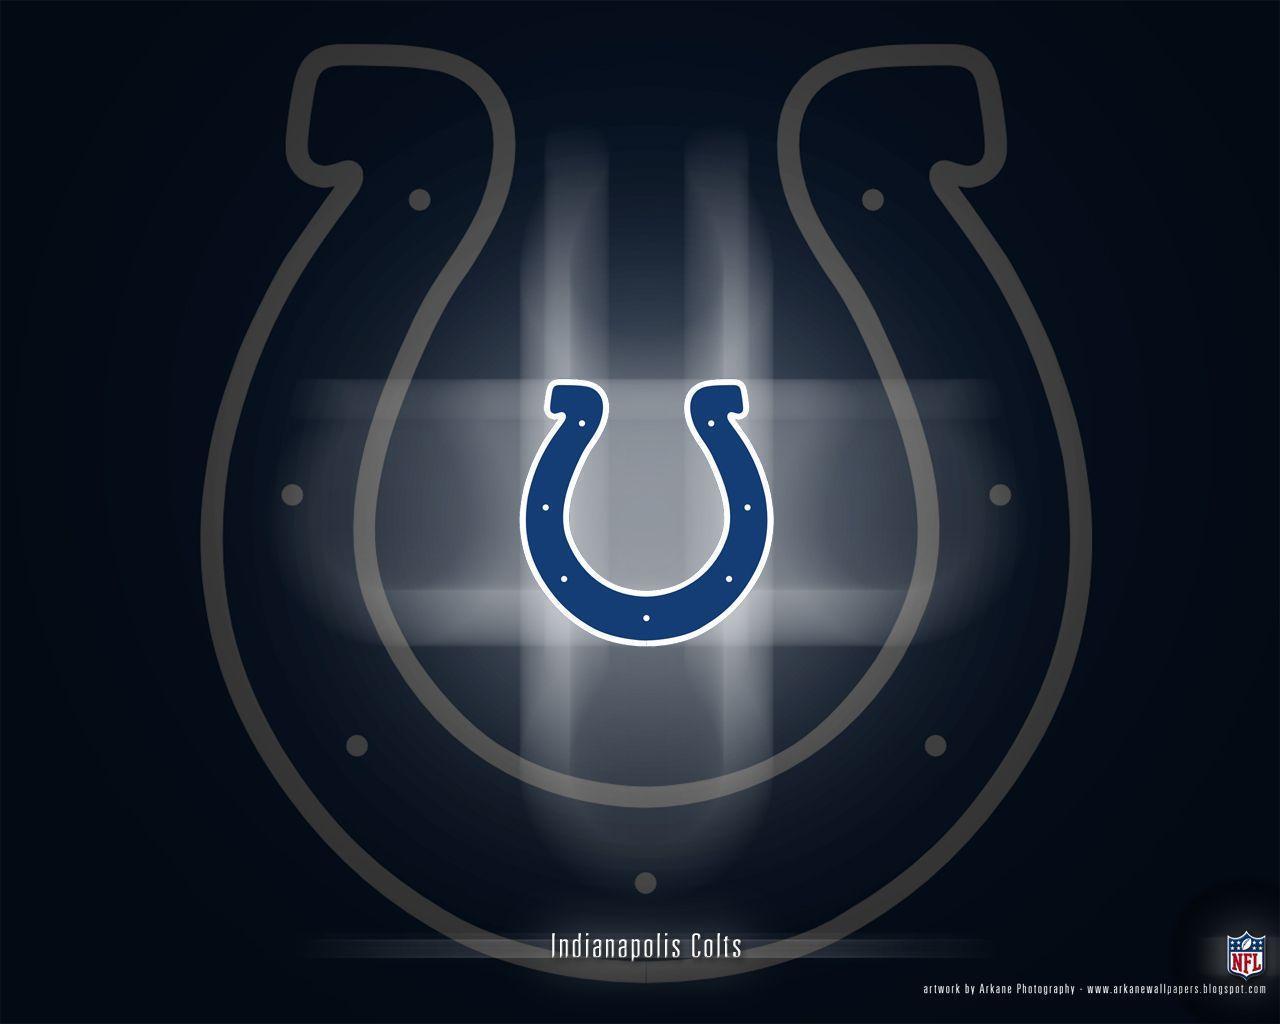 Indianapolis Colts 2013 Football Season